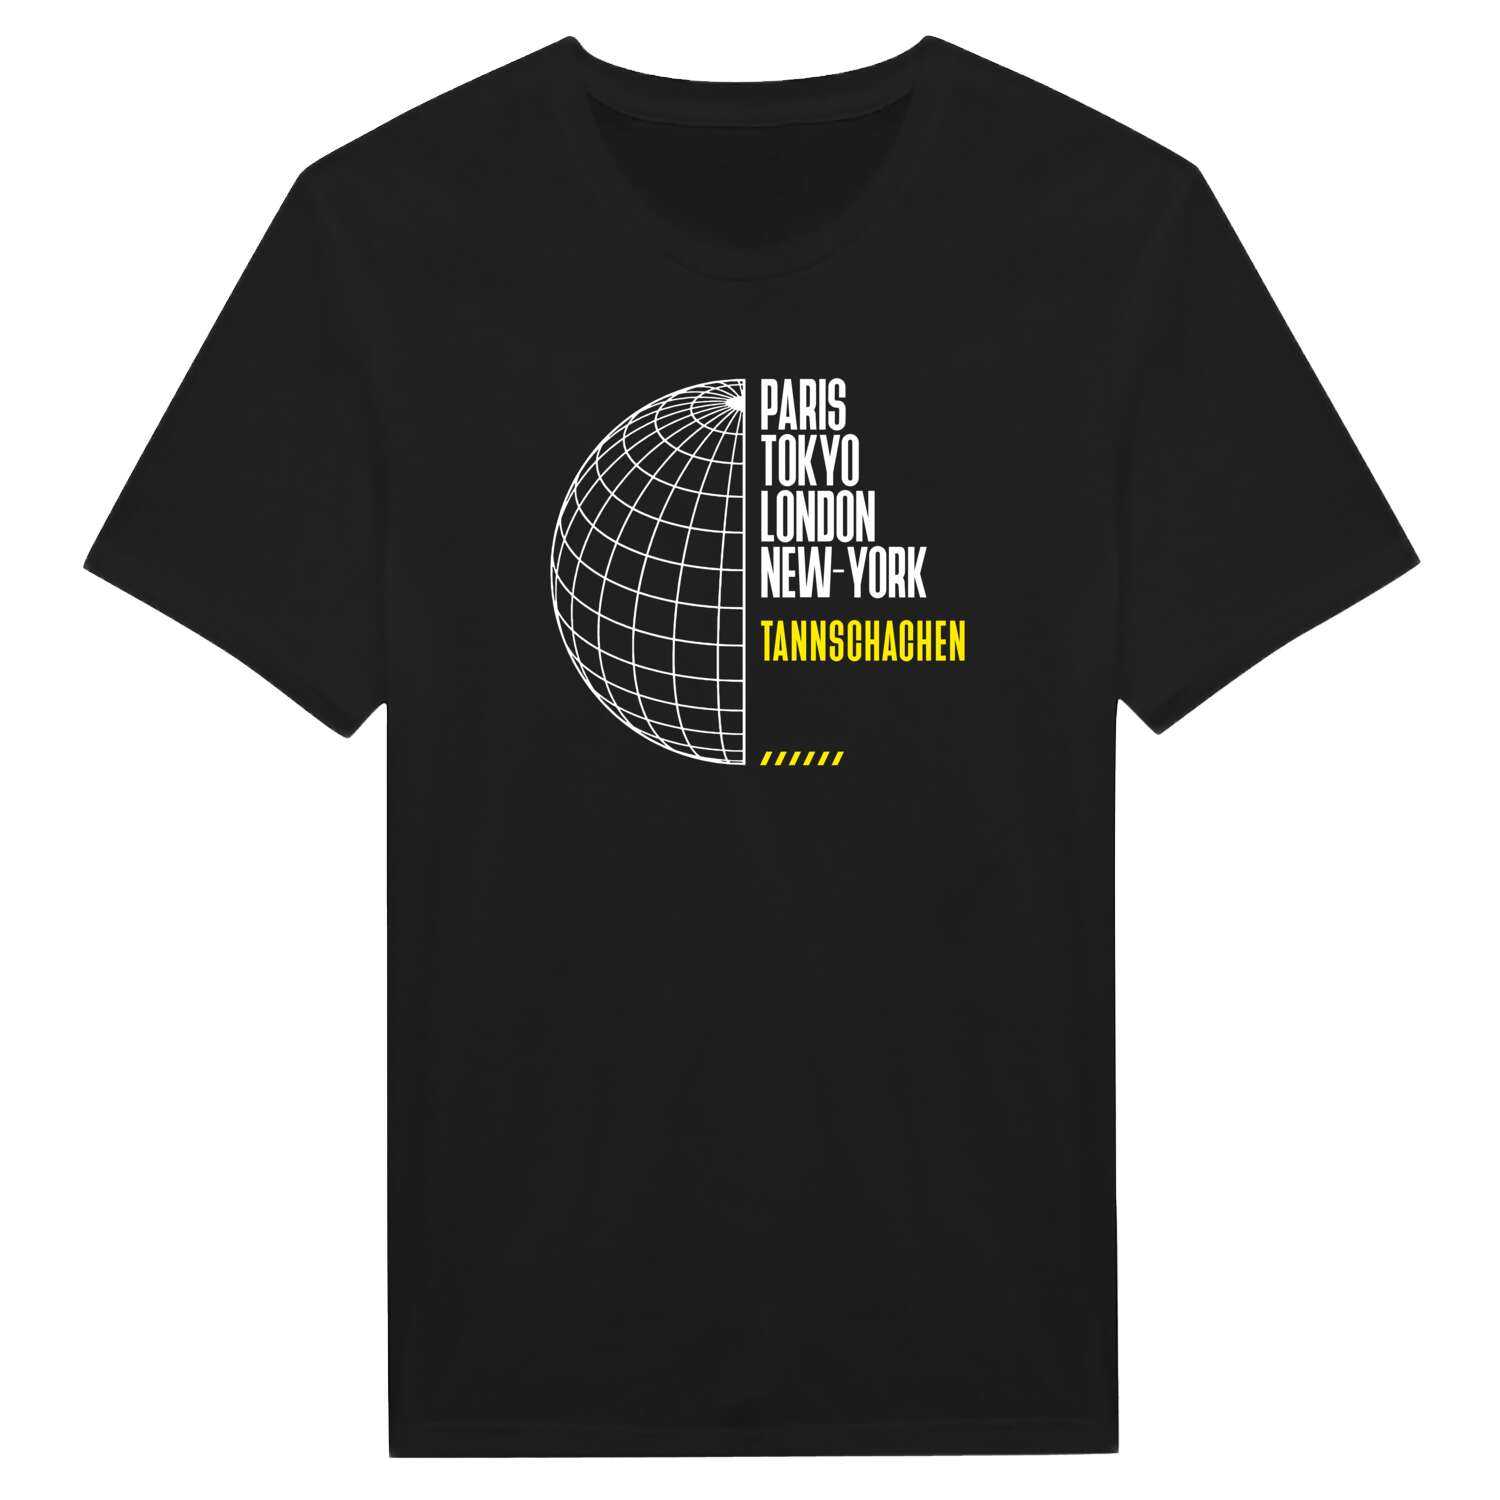 Tannschachen T-Shirt »Paris Tokyo London«